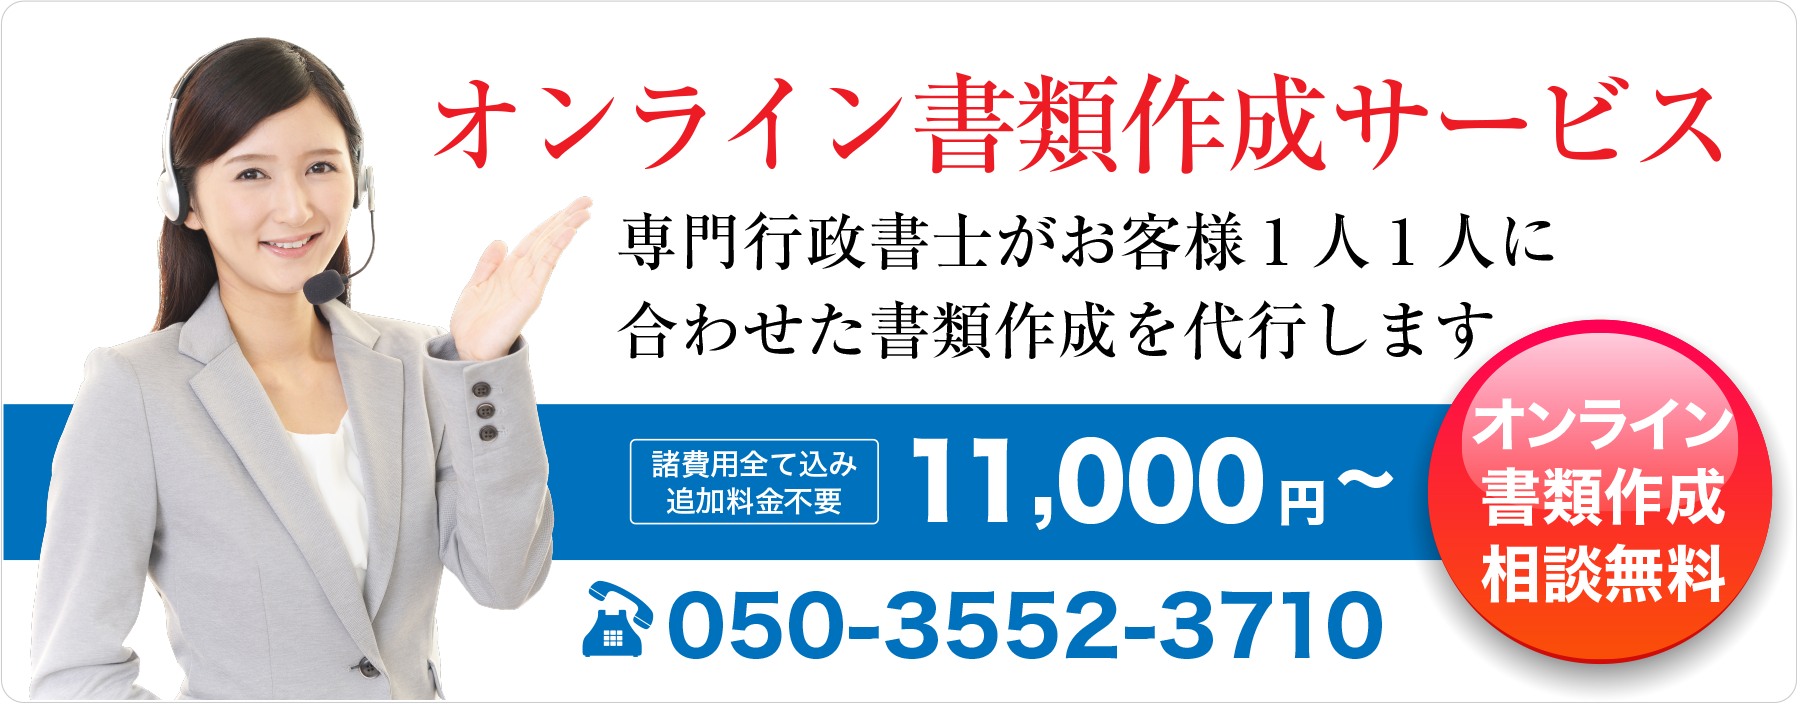 オンライン書類作成サービス | 行政書士法人 JAPAN VISA SUPPORT